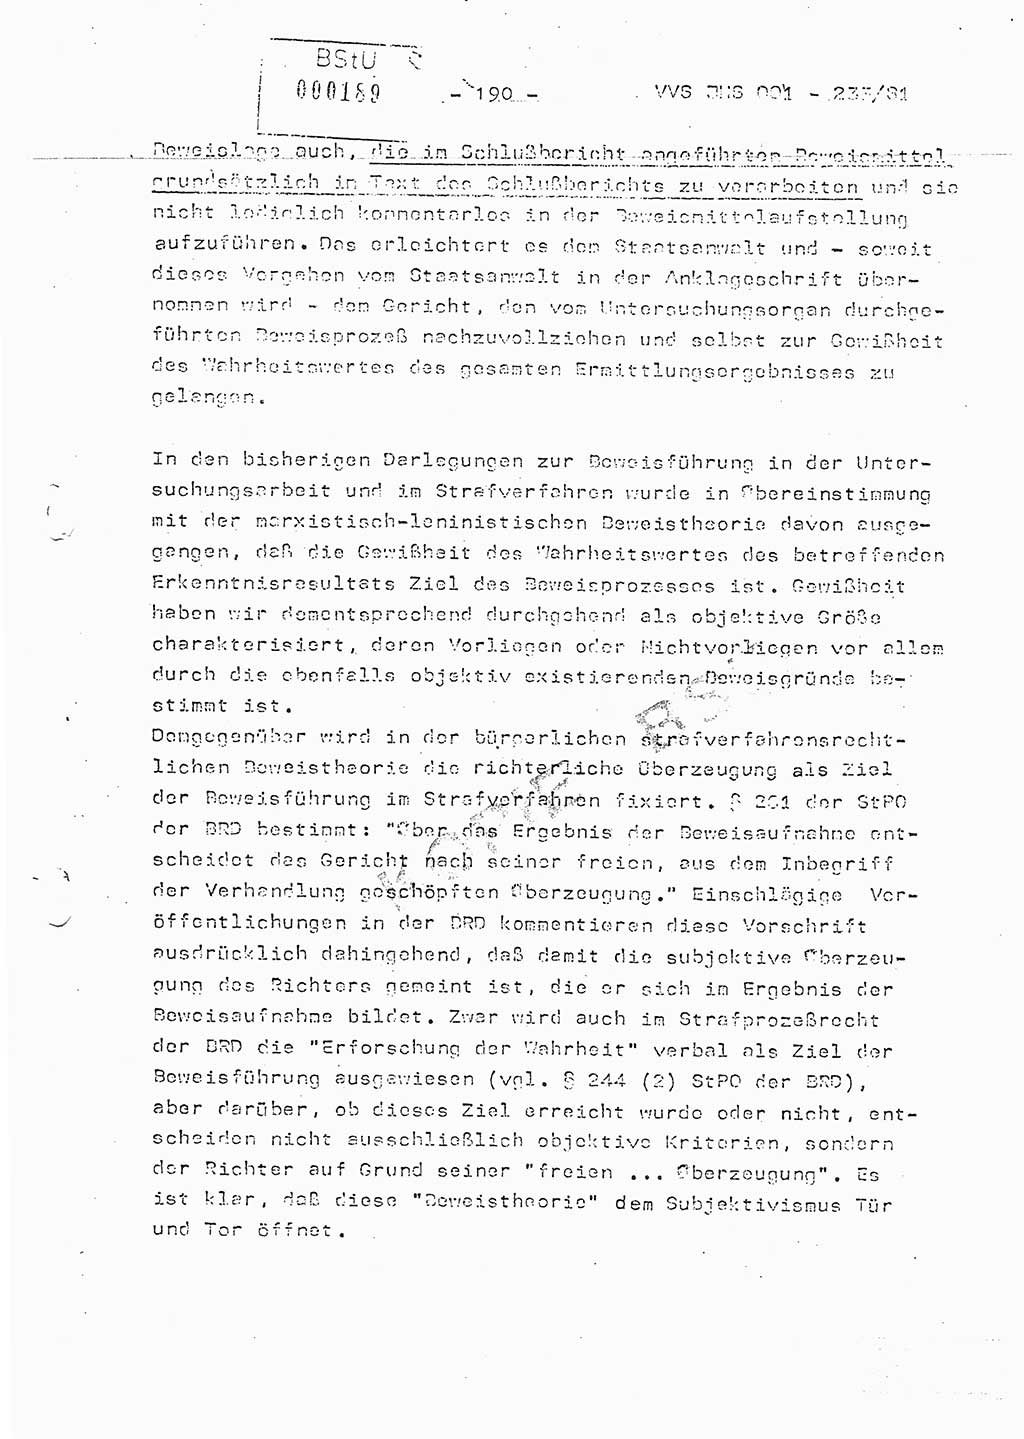 Dissertation Oberstleutnant Horst Zank (JHS), Oberstleutnant Dr. Karl-Heinz Knoblauch (JHS), Oberstleutnant Gustav-Adolf Kowalewski (HA Ⅸ), Oberstleutnant Wolfgang Plötner (HA Ⅸ), Ministerium für Staatssicherheit (MfS) [Deutsche Demokratische Republik (DDR)], Juristische Hochschule (JHS), Vertrauliche Verschlußsache (VVS) o001-233/81, Potsdam 1981, Blatt 190 (Diss. MfS DDR JHS VVS o001-233/81 1981, Bl. 190)